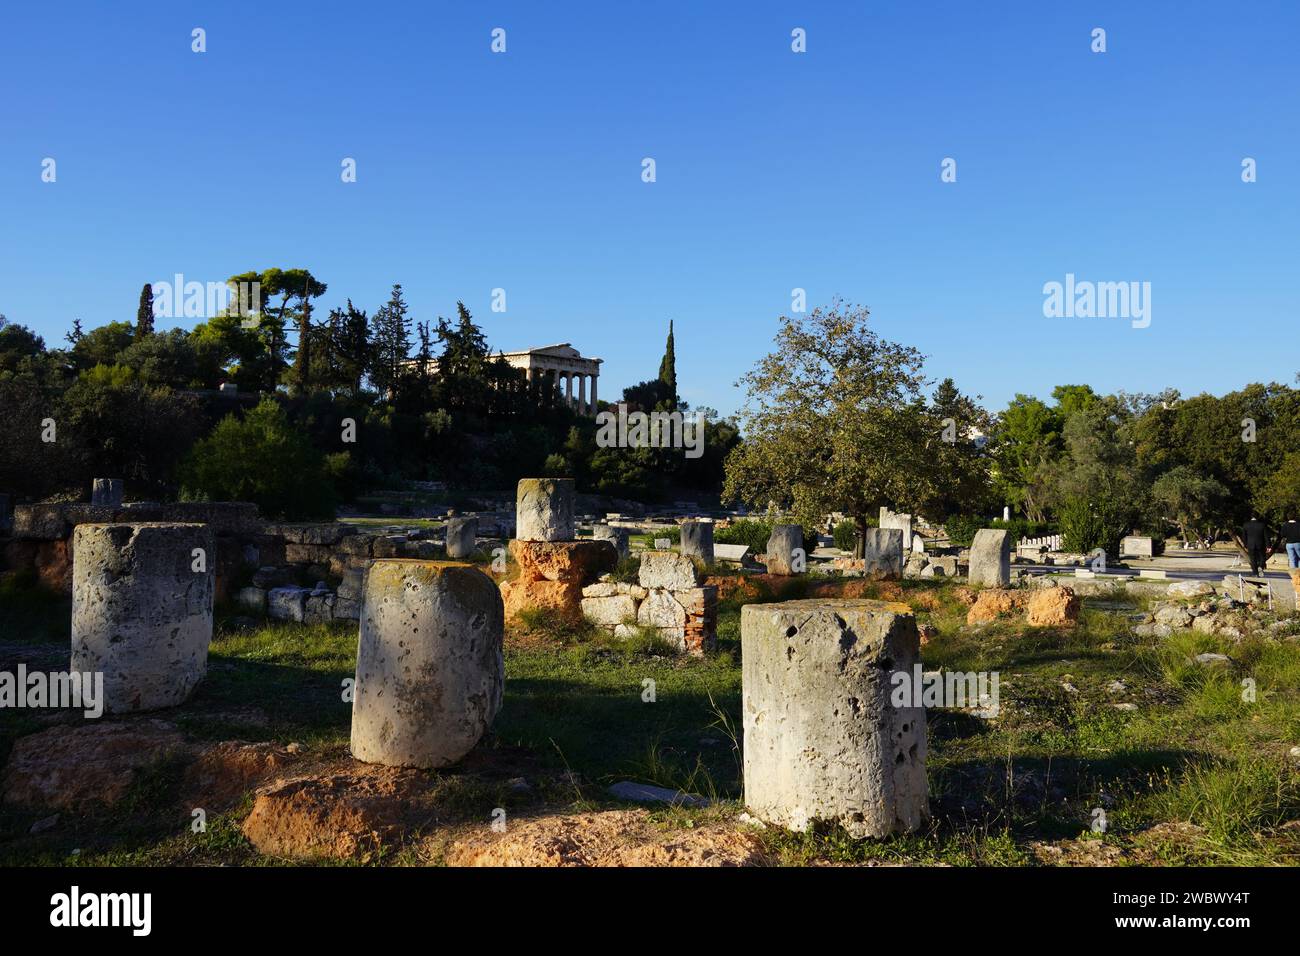 Blick auf die Ruinen der antiken Agora, oder Marktplatz, in Athen, Griechenland. Säulenfragmente einer Kolonnade oder stoa Stockfoto